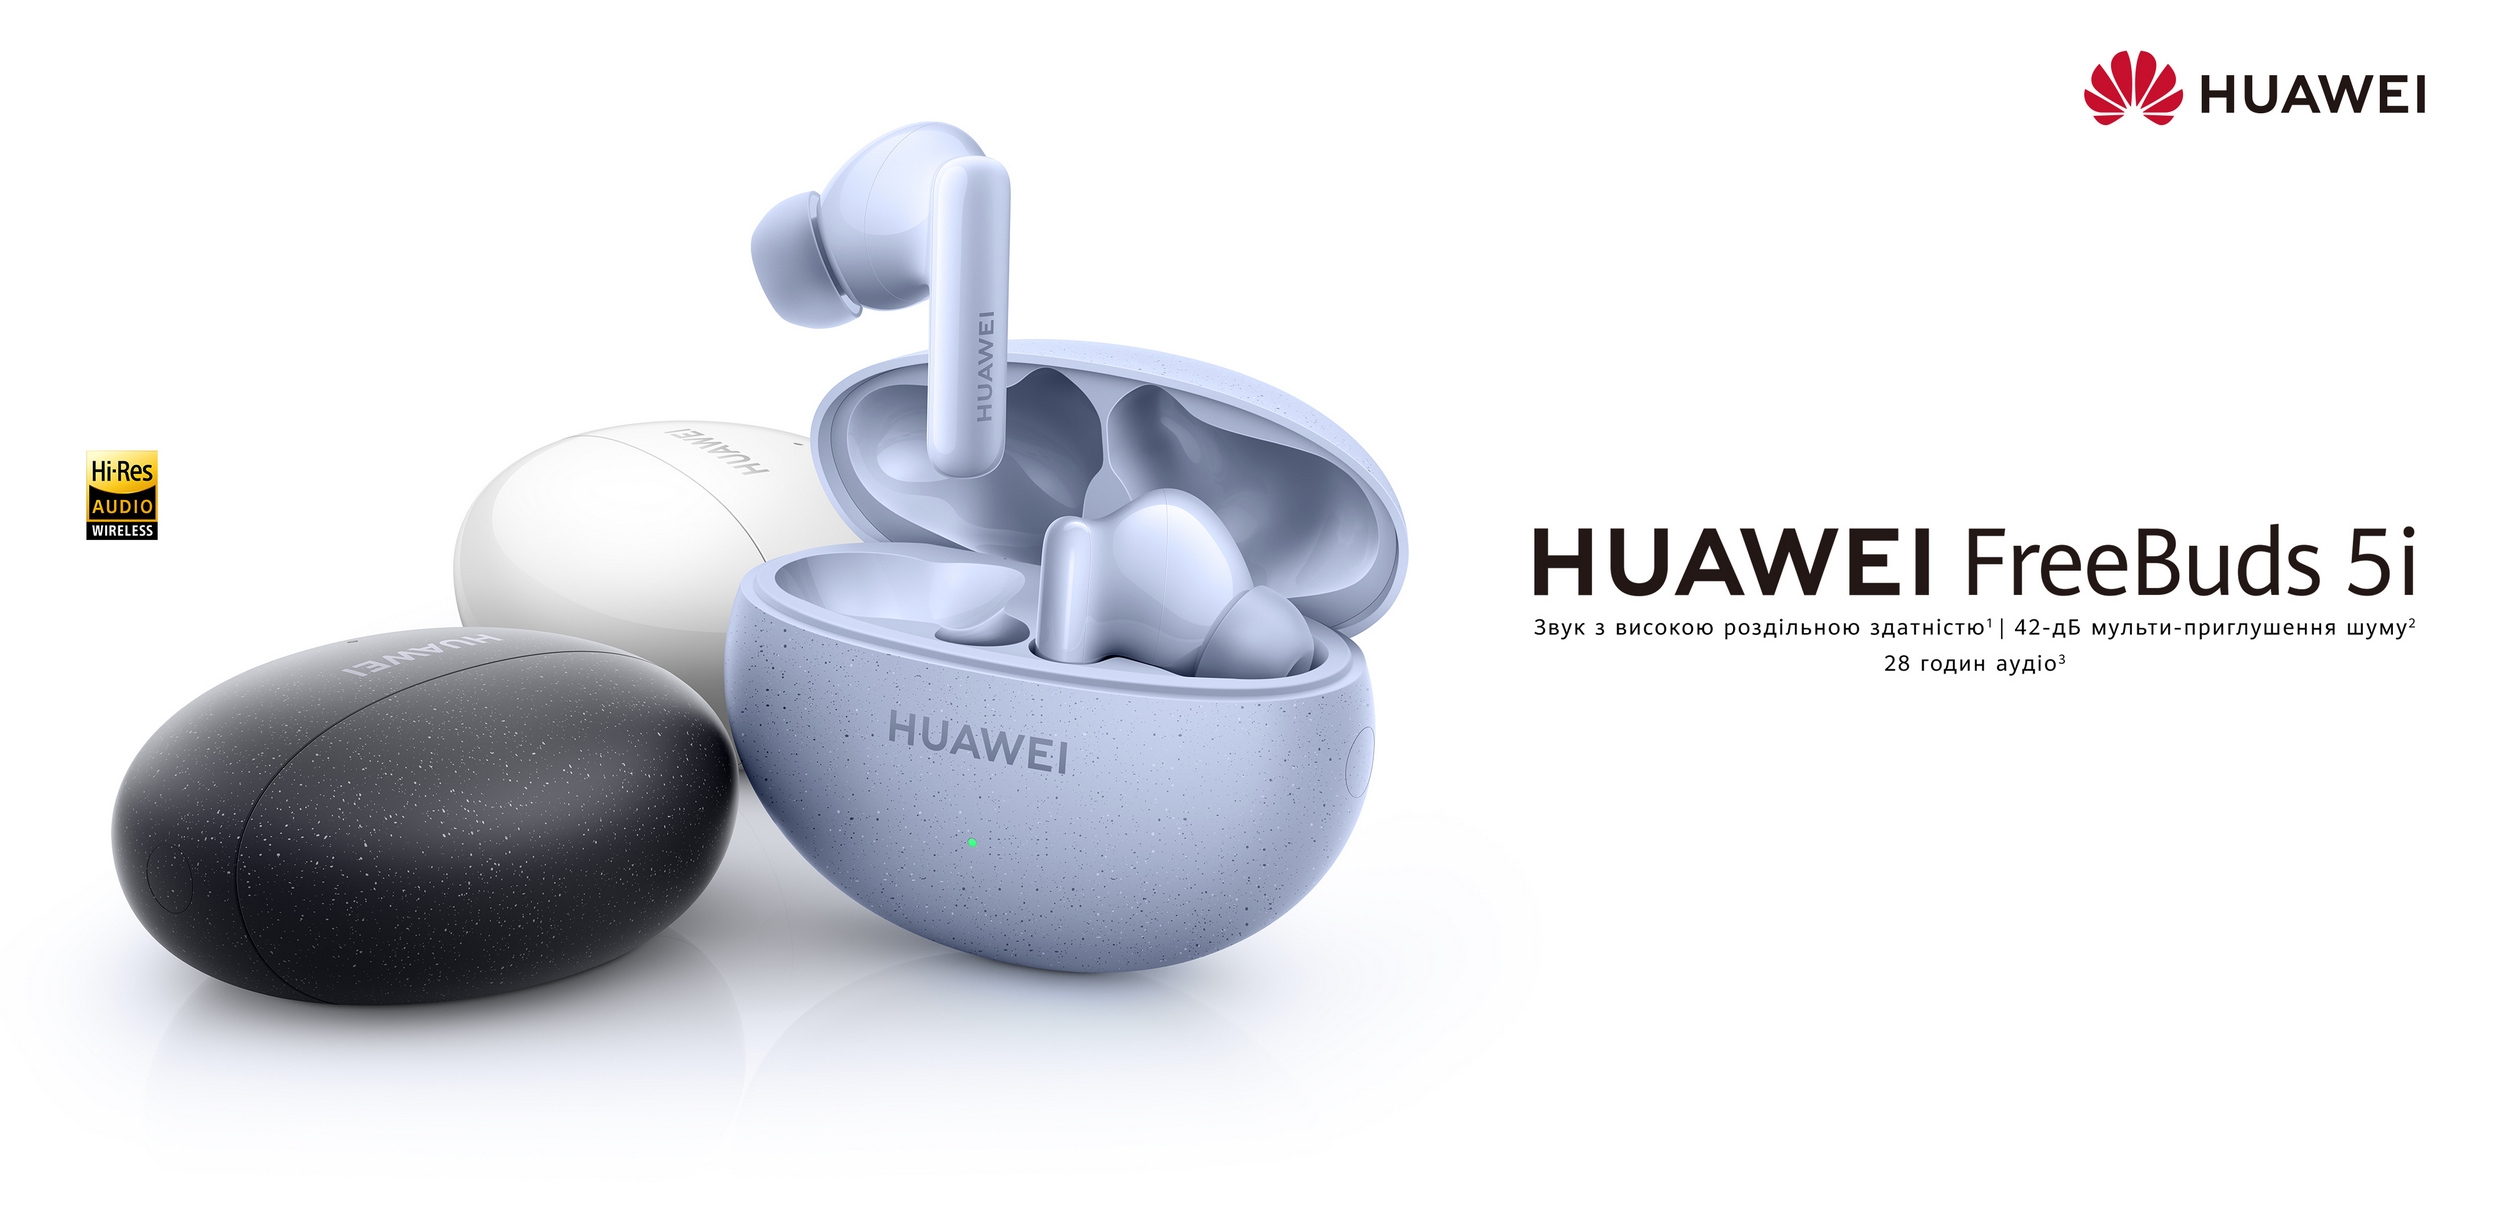 Сравнение huawei freebuds 5i. Наушники TWS Huawei freebuds 5. Наушники true Wireless Huawei freebuds 5i. Наушники true Wireless Huawei freebuds 5i Ceramic White (t0014). Наушники Huawei freebuds 5i голубые.